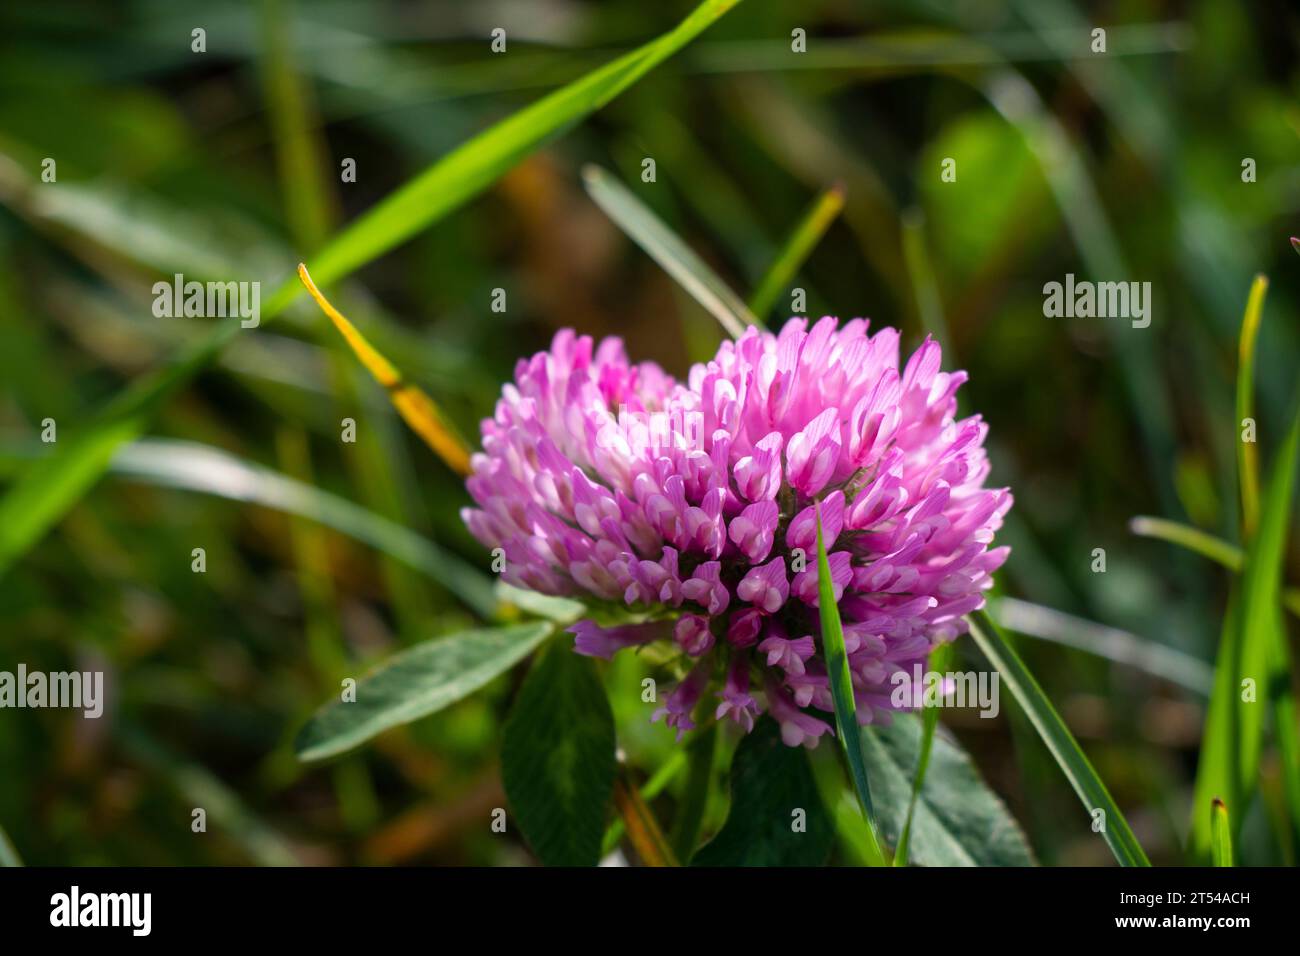 Crown vetch Coronilla flower in field Stock Photo